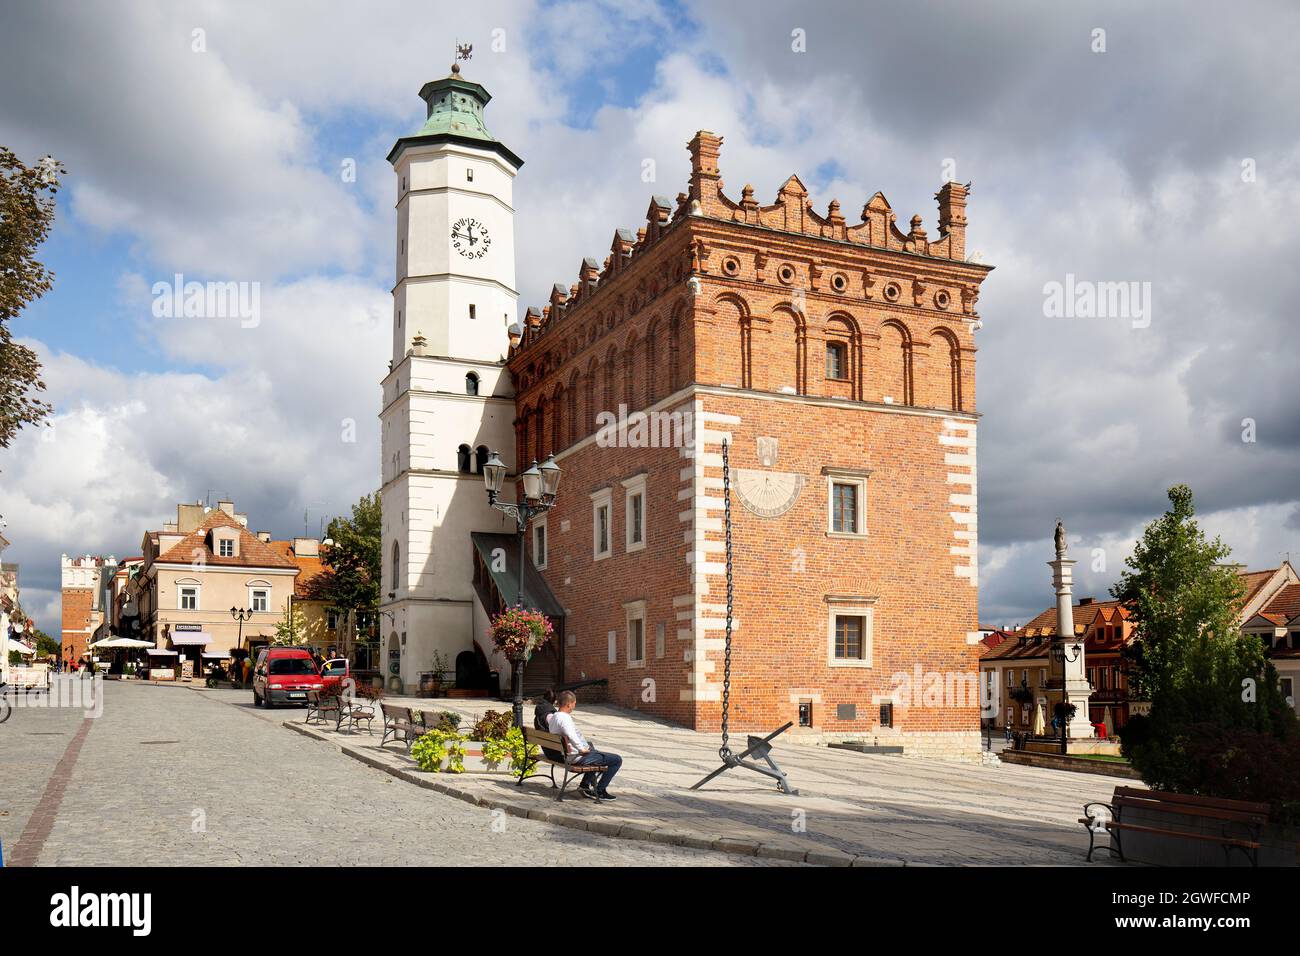 Sandomierz, Polen - 21. September 2021: Blick auf den Markt mit dem gotischen Rathaus von Sandomierz, das eine wichtige Touristenattraktion ist Stockfoto